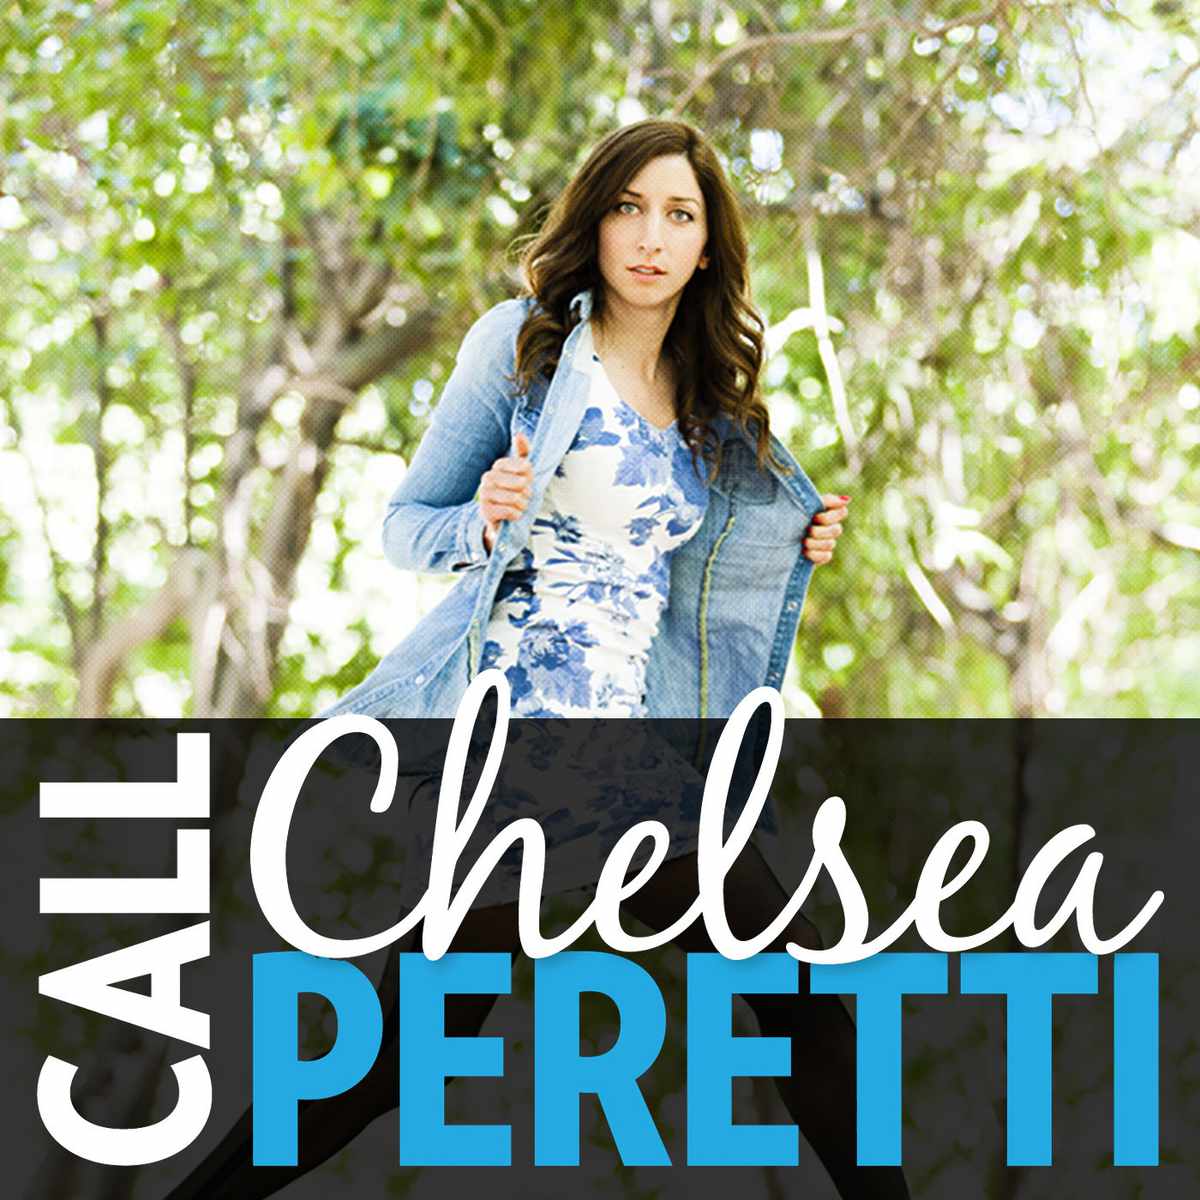 Chelsea Peretti: Call Chelsea Peretti